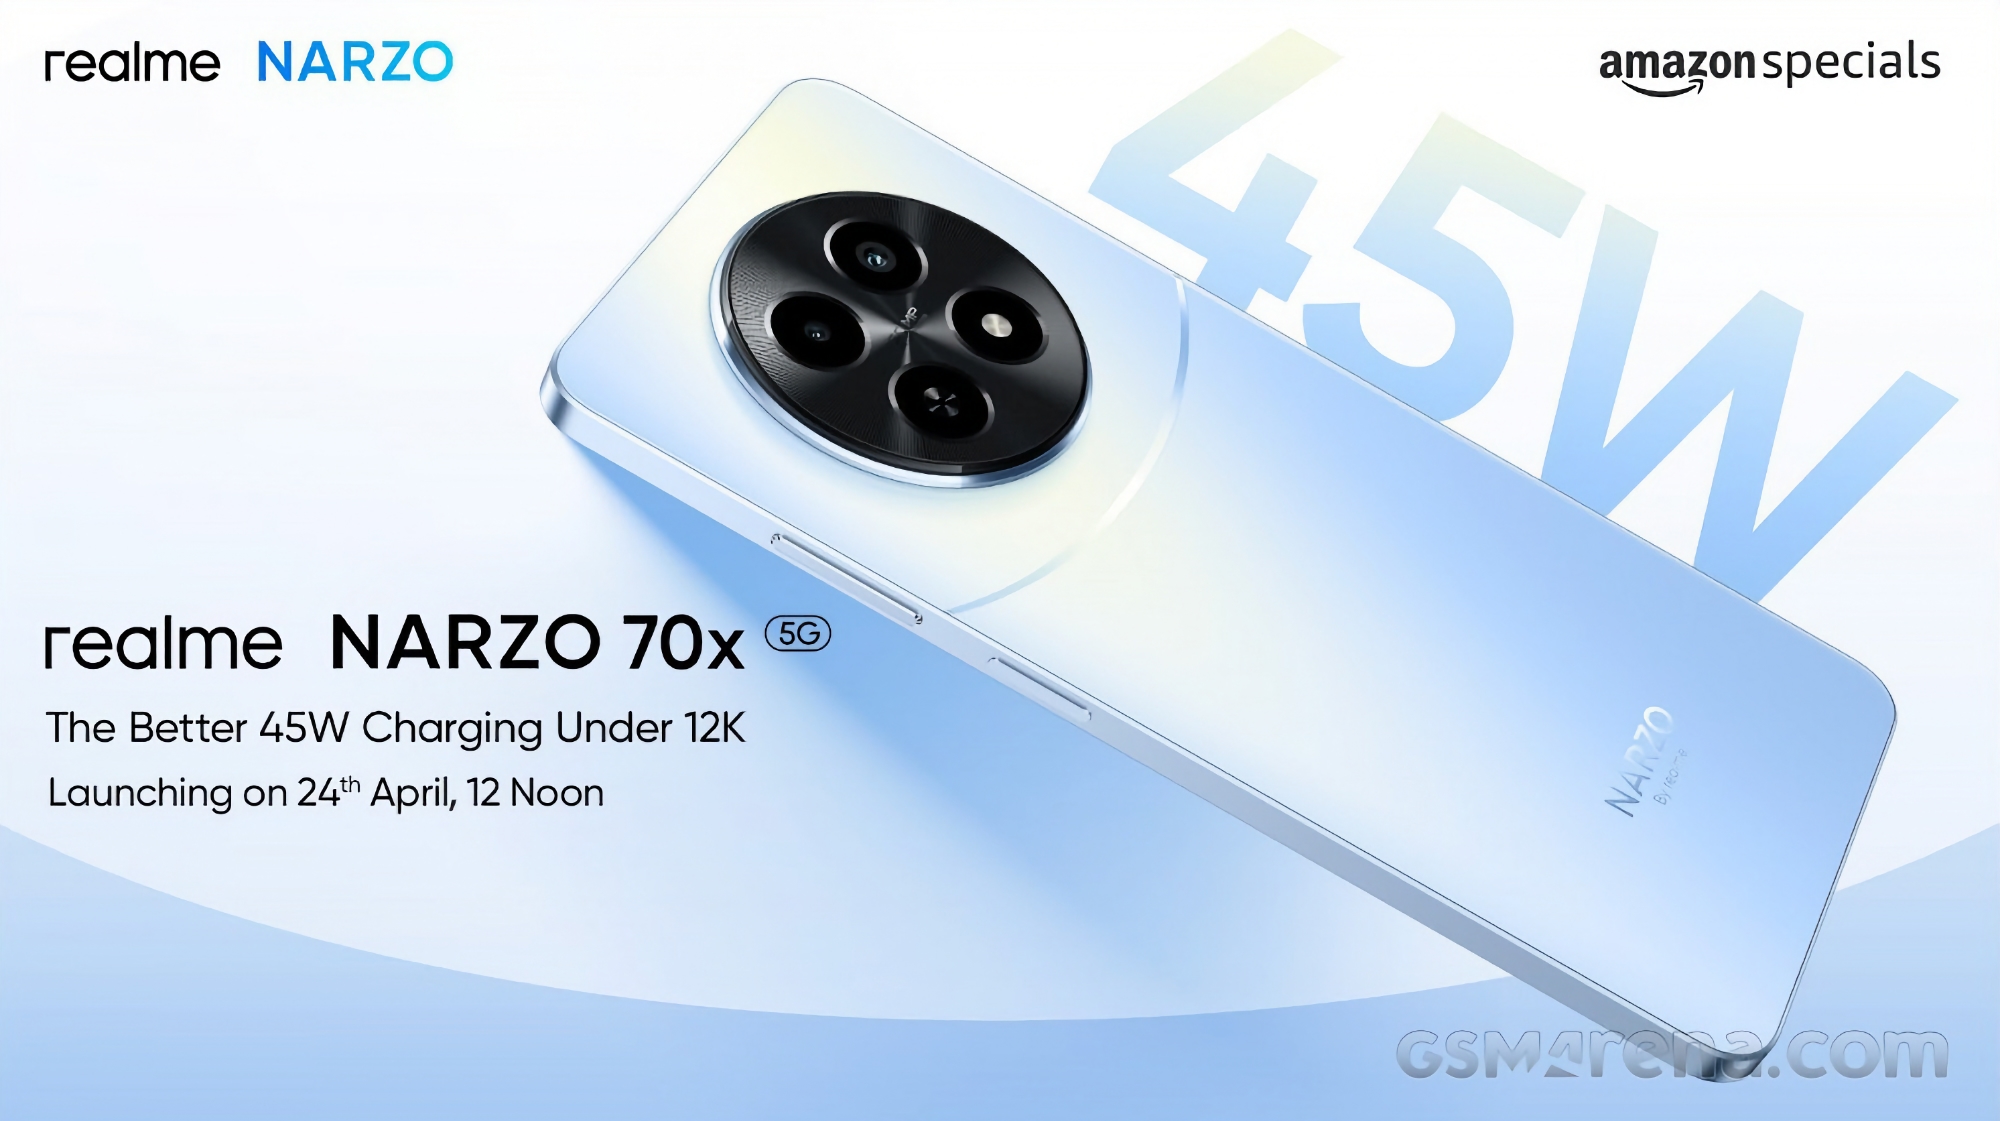 Narzo 70x 5G realme Narzo 70x med 50 MP kamera og 45W opladning debuterer den 24. april